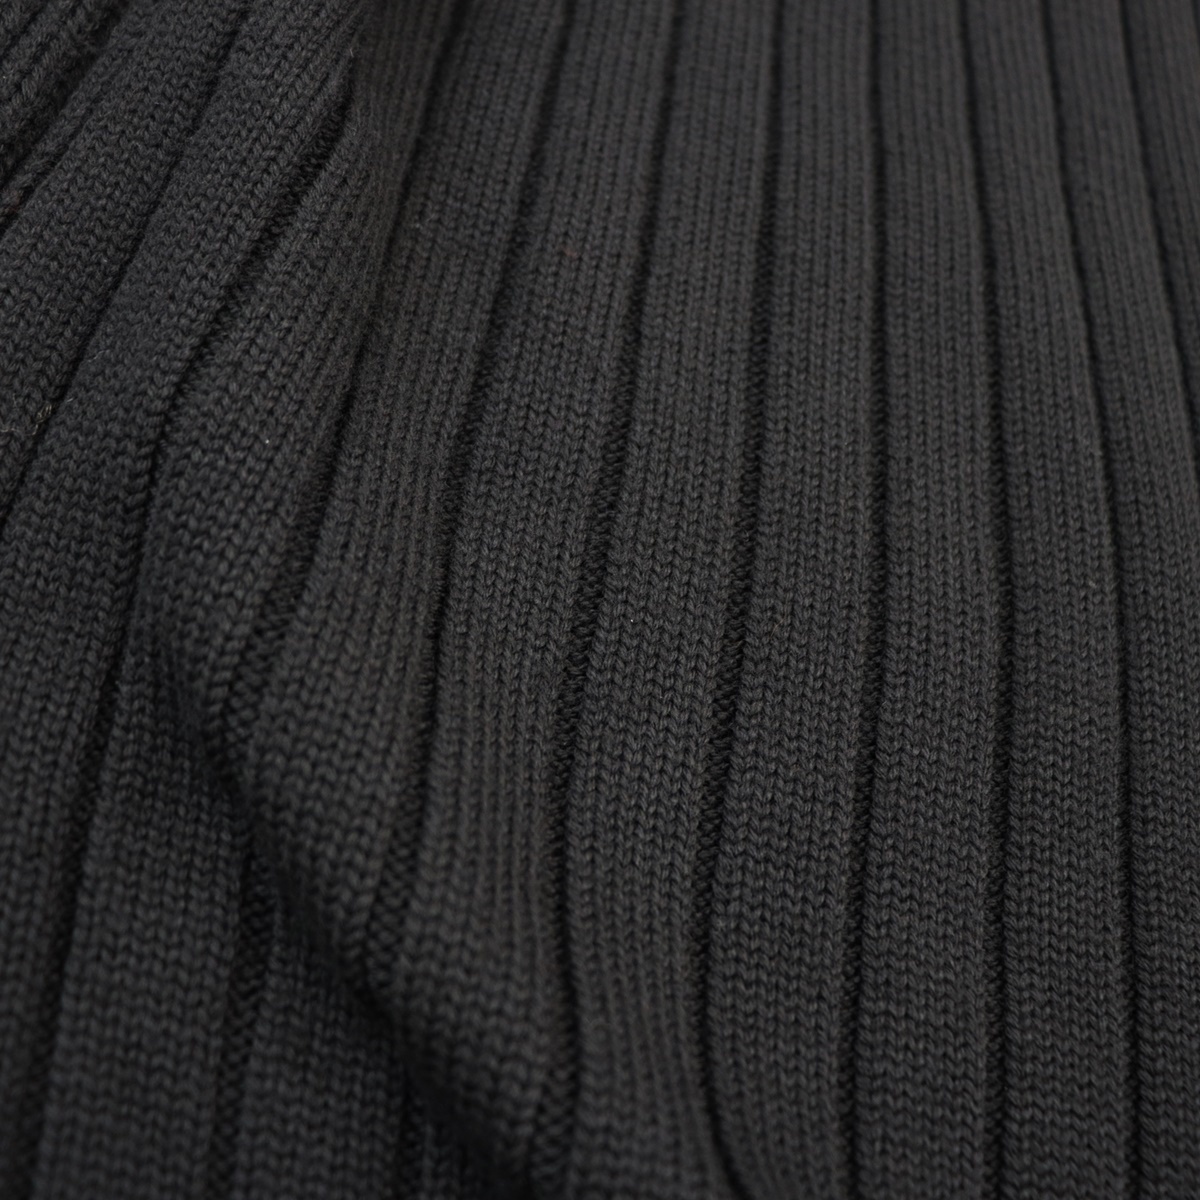  прекрасный товар Fendi ребра вязаный с высоким воротником свитер мужской чёрный 48 дизайн вязаный FENDI